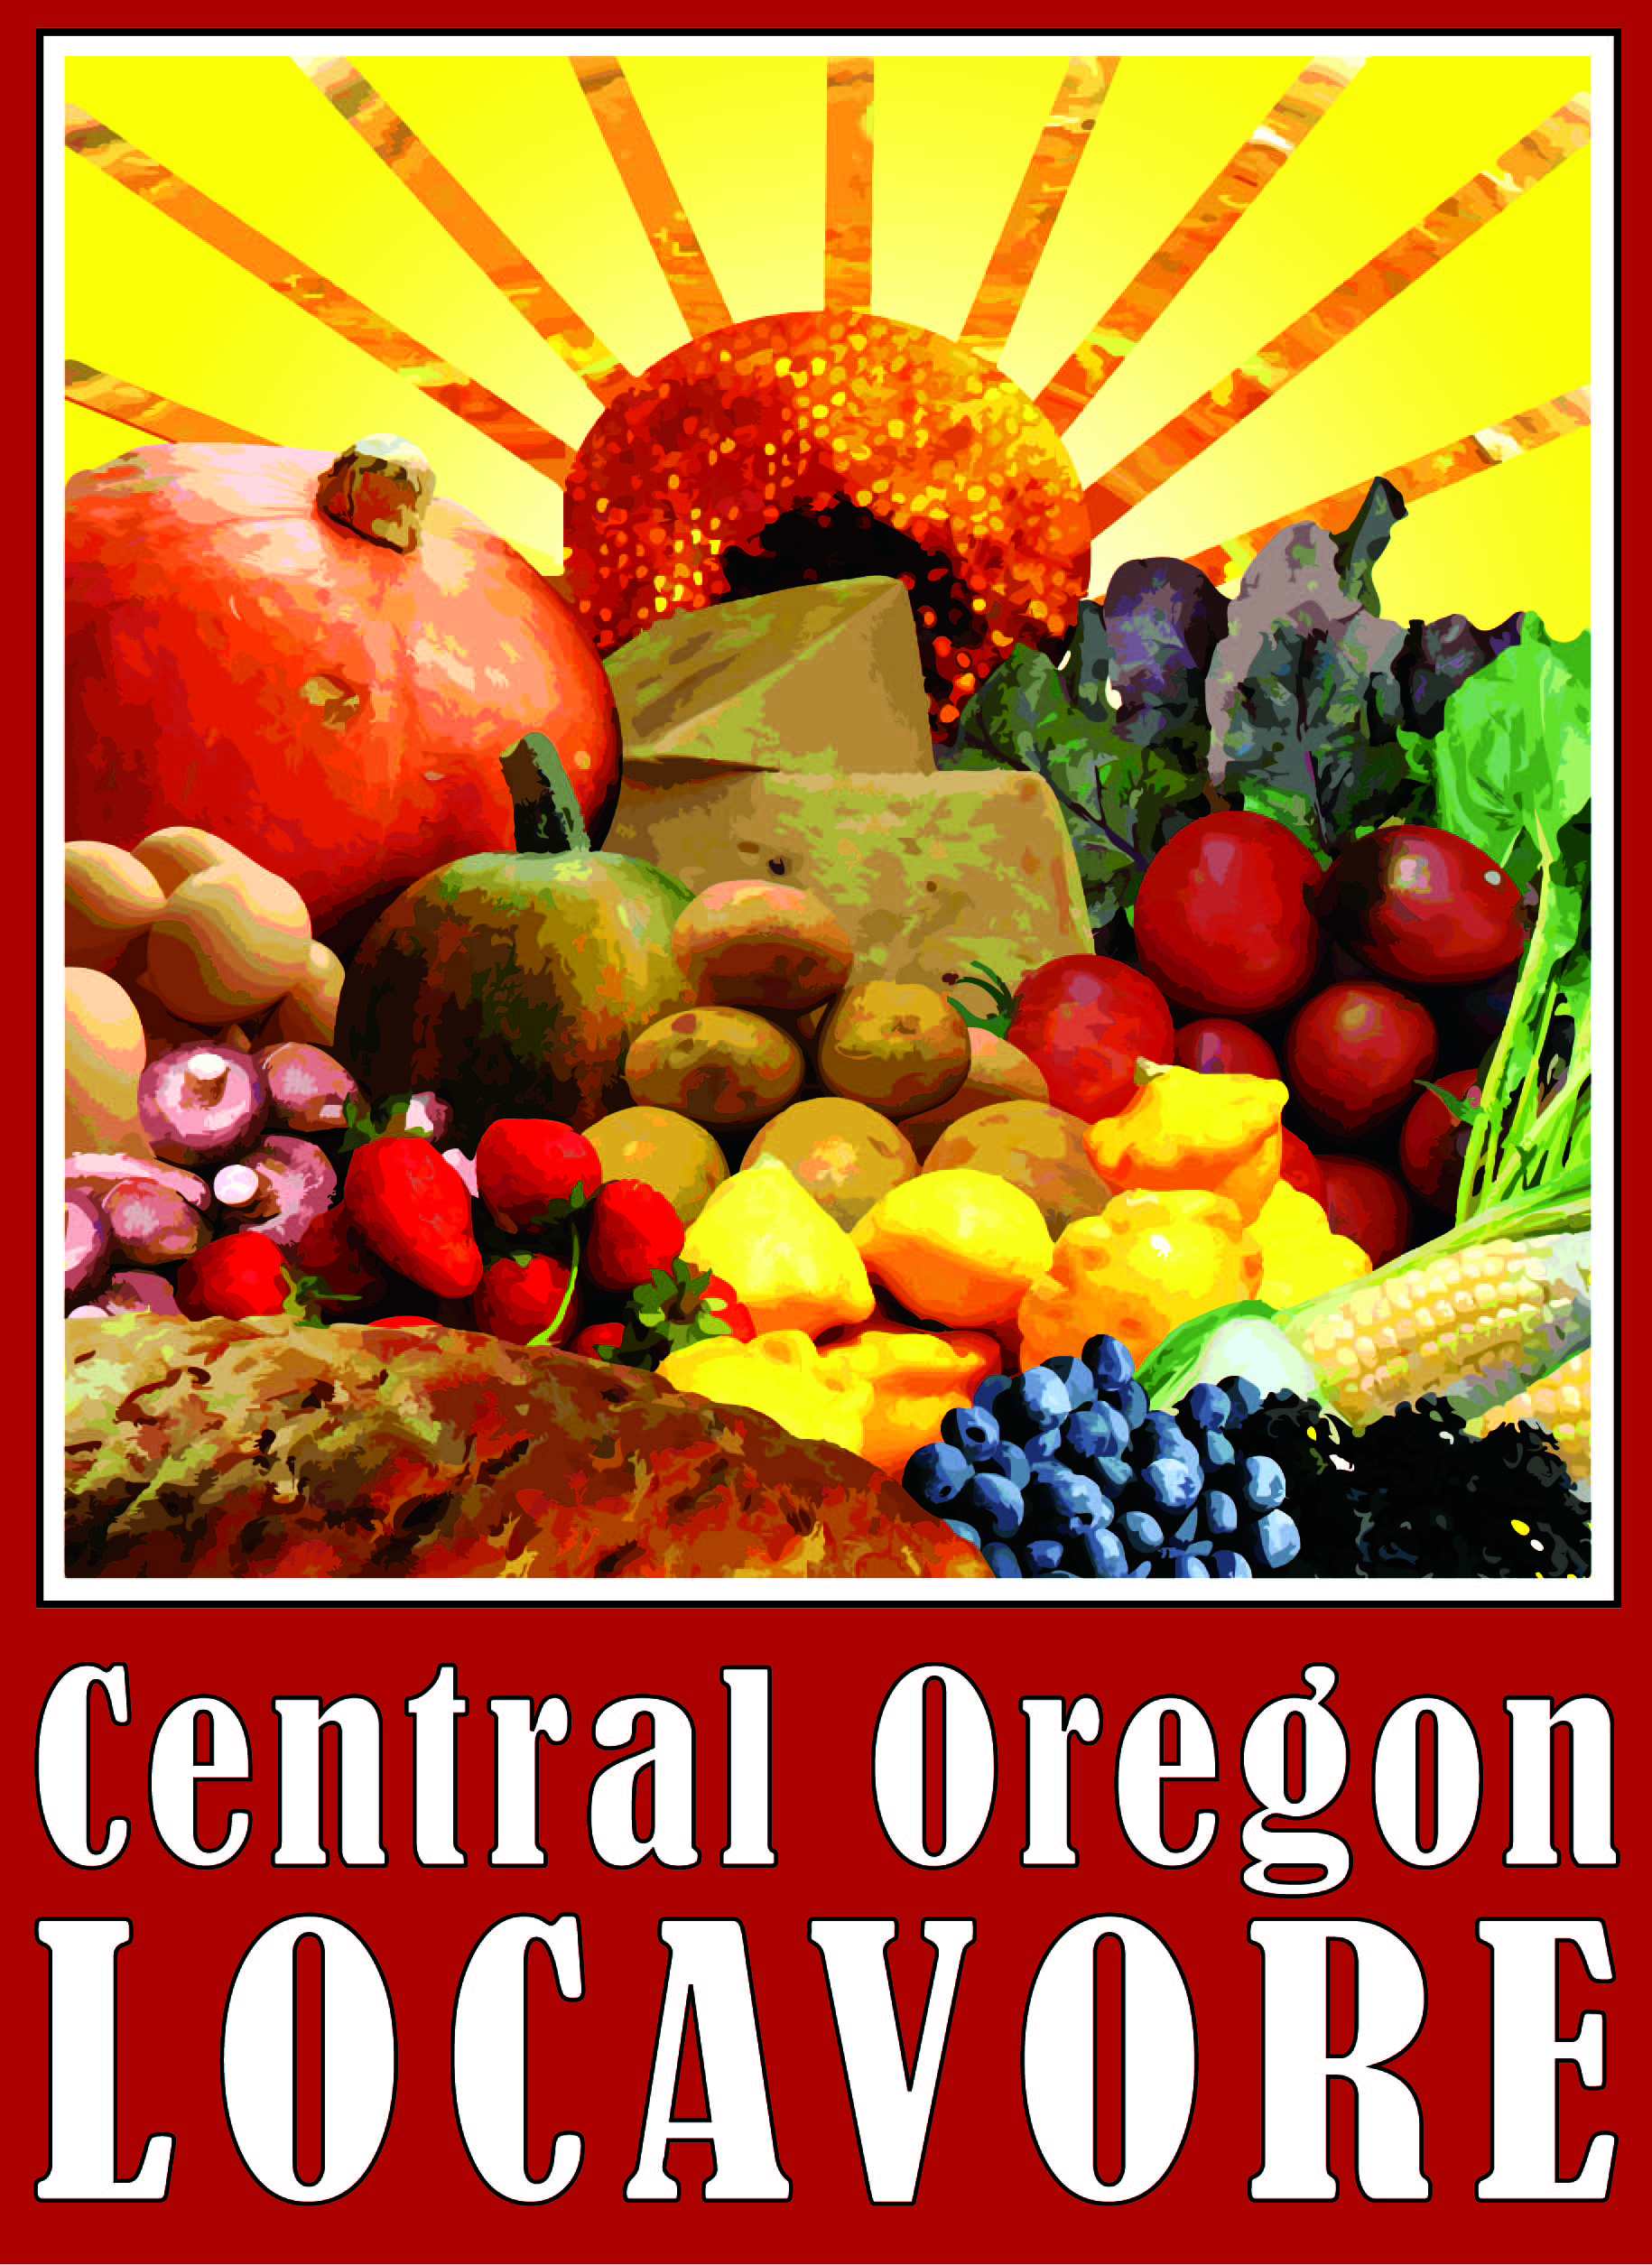 Central-Oregon-Locavore.jpg